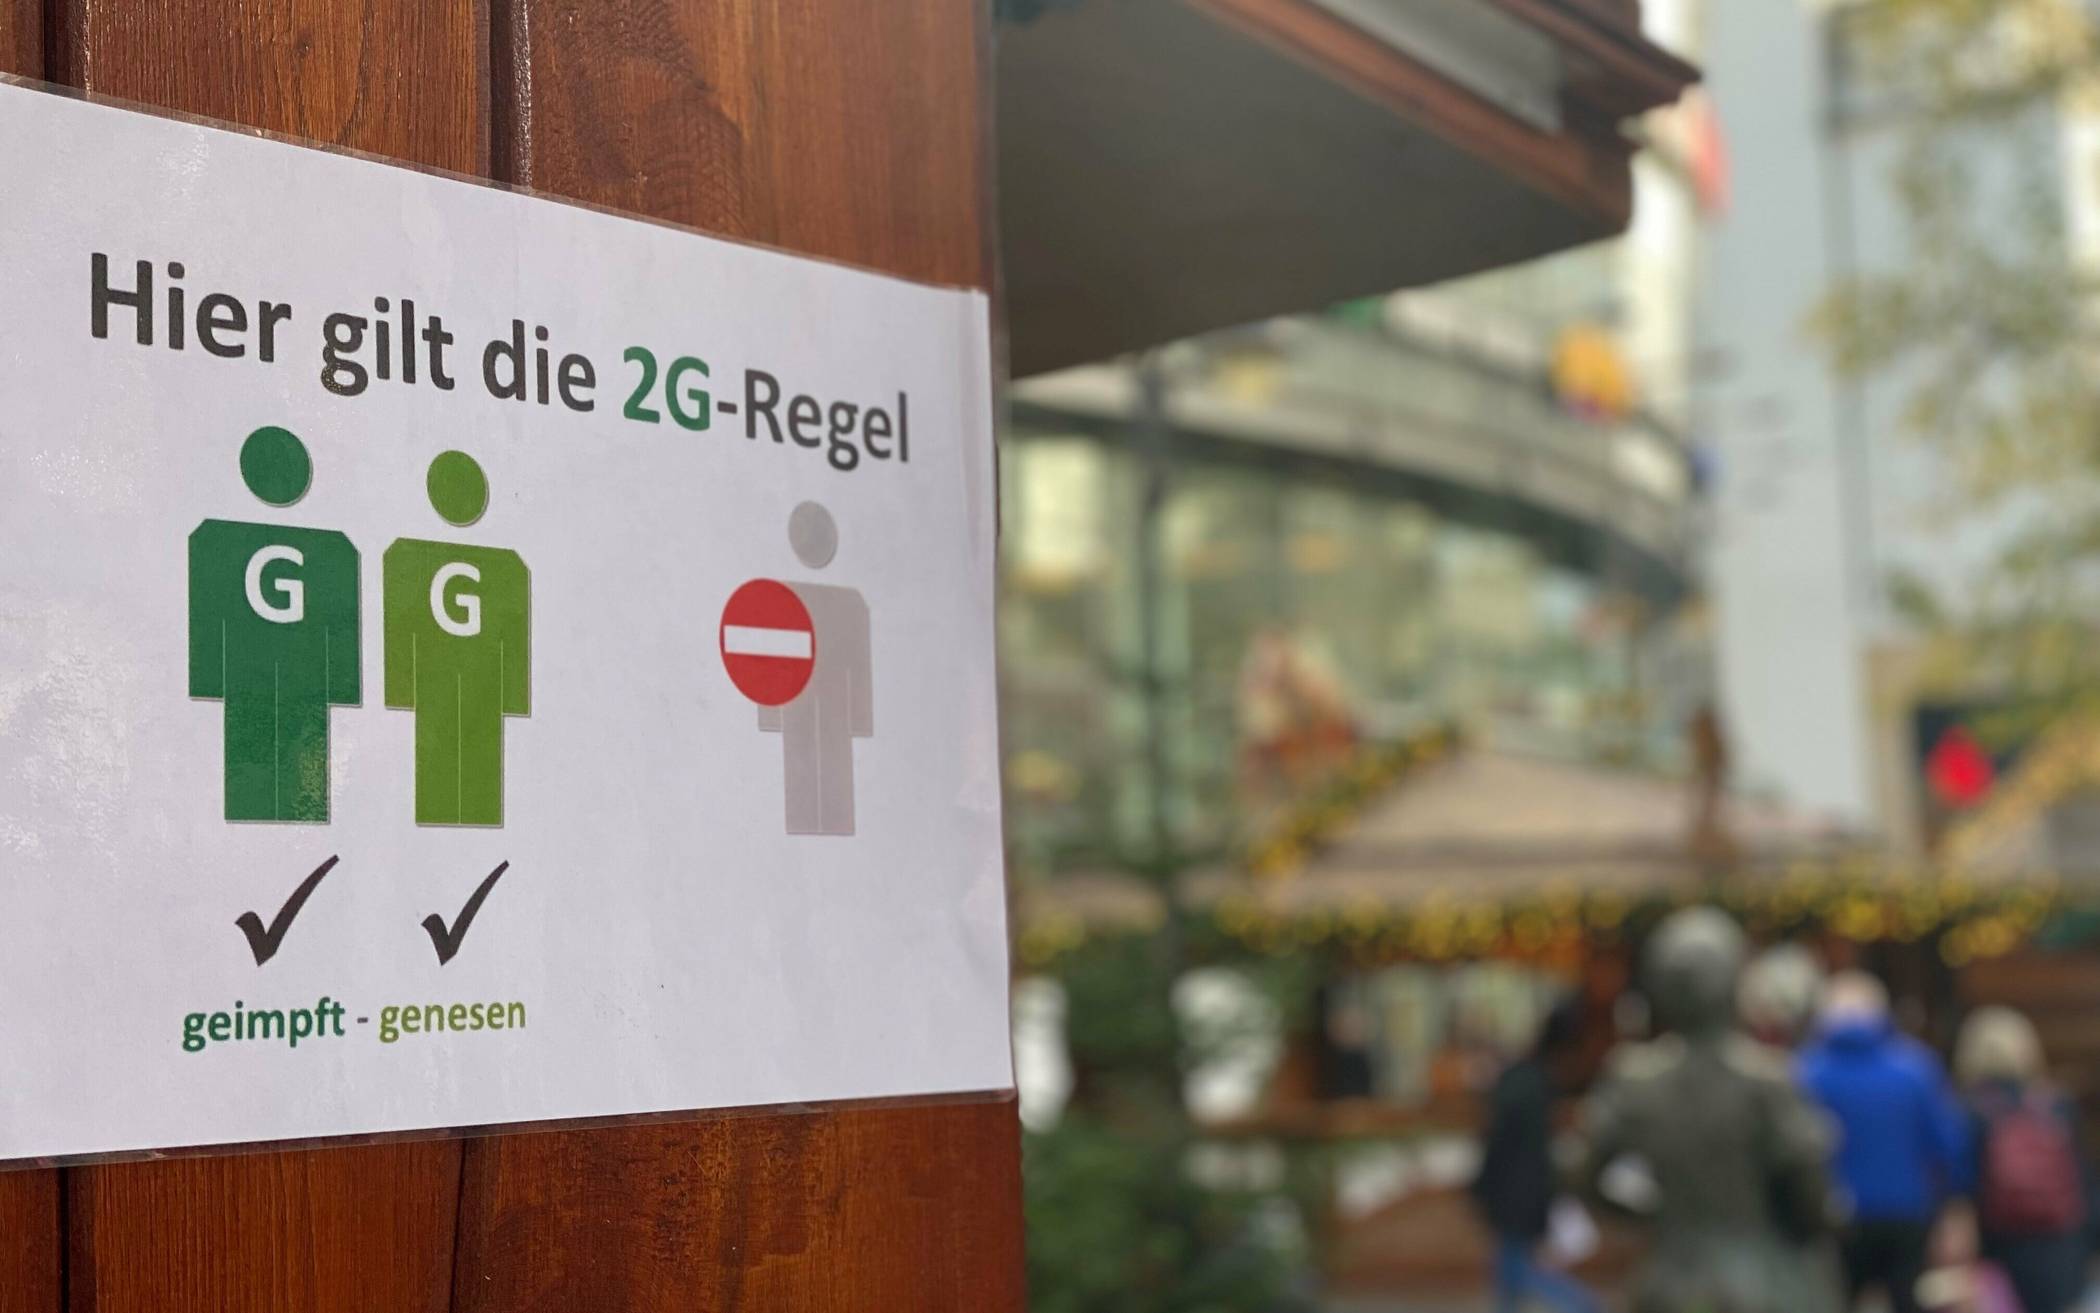  Diese Schilder machen klar: An Wuppertals Weihnachtsmarkt-Ständen gilt die 2G-Regel. 